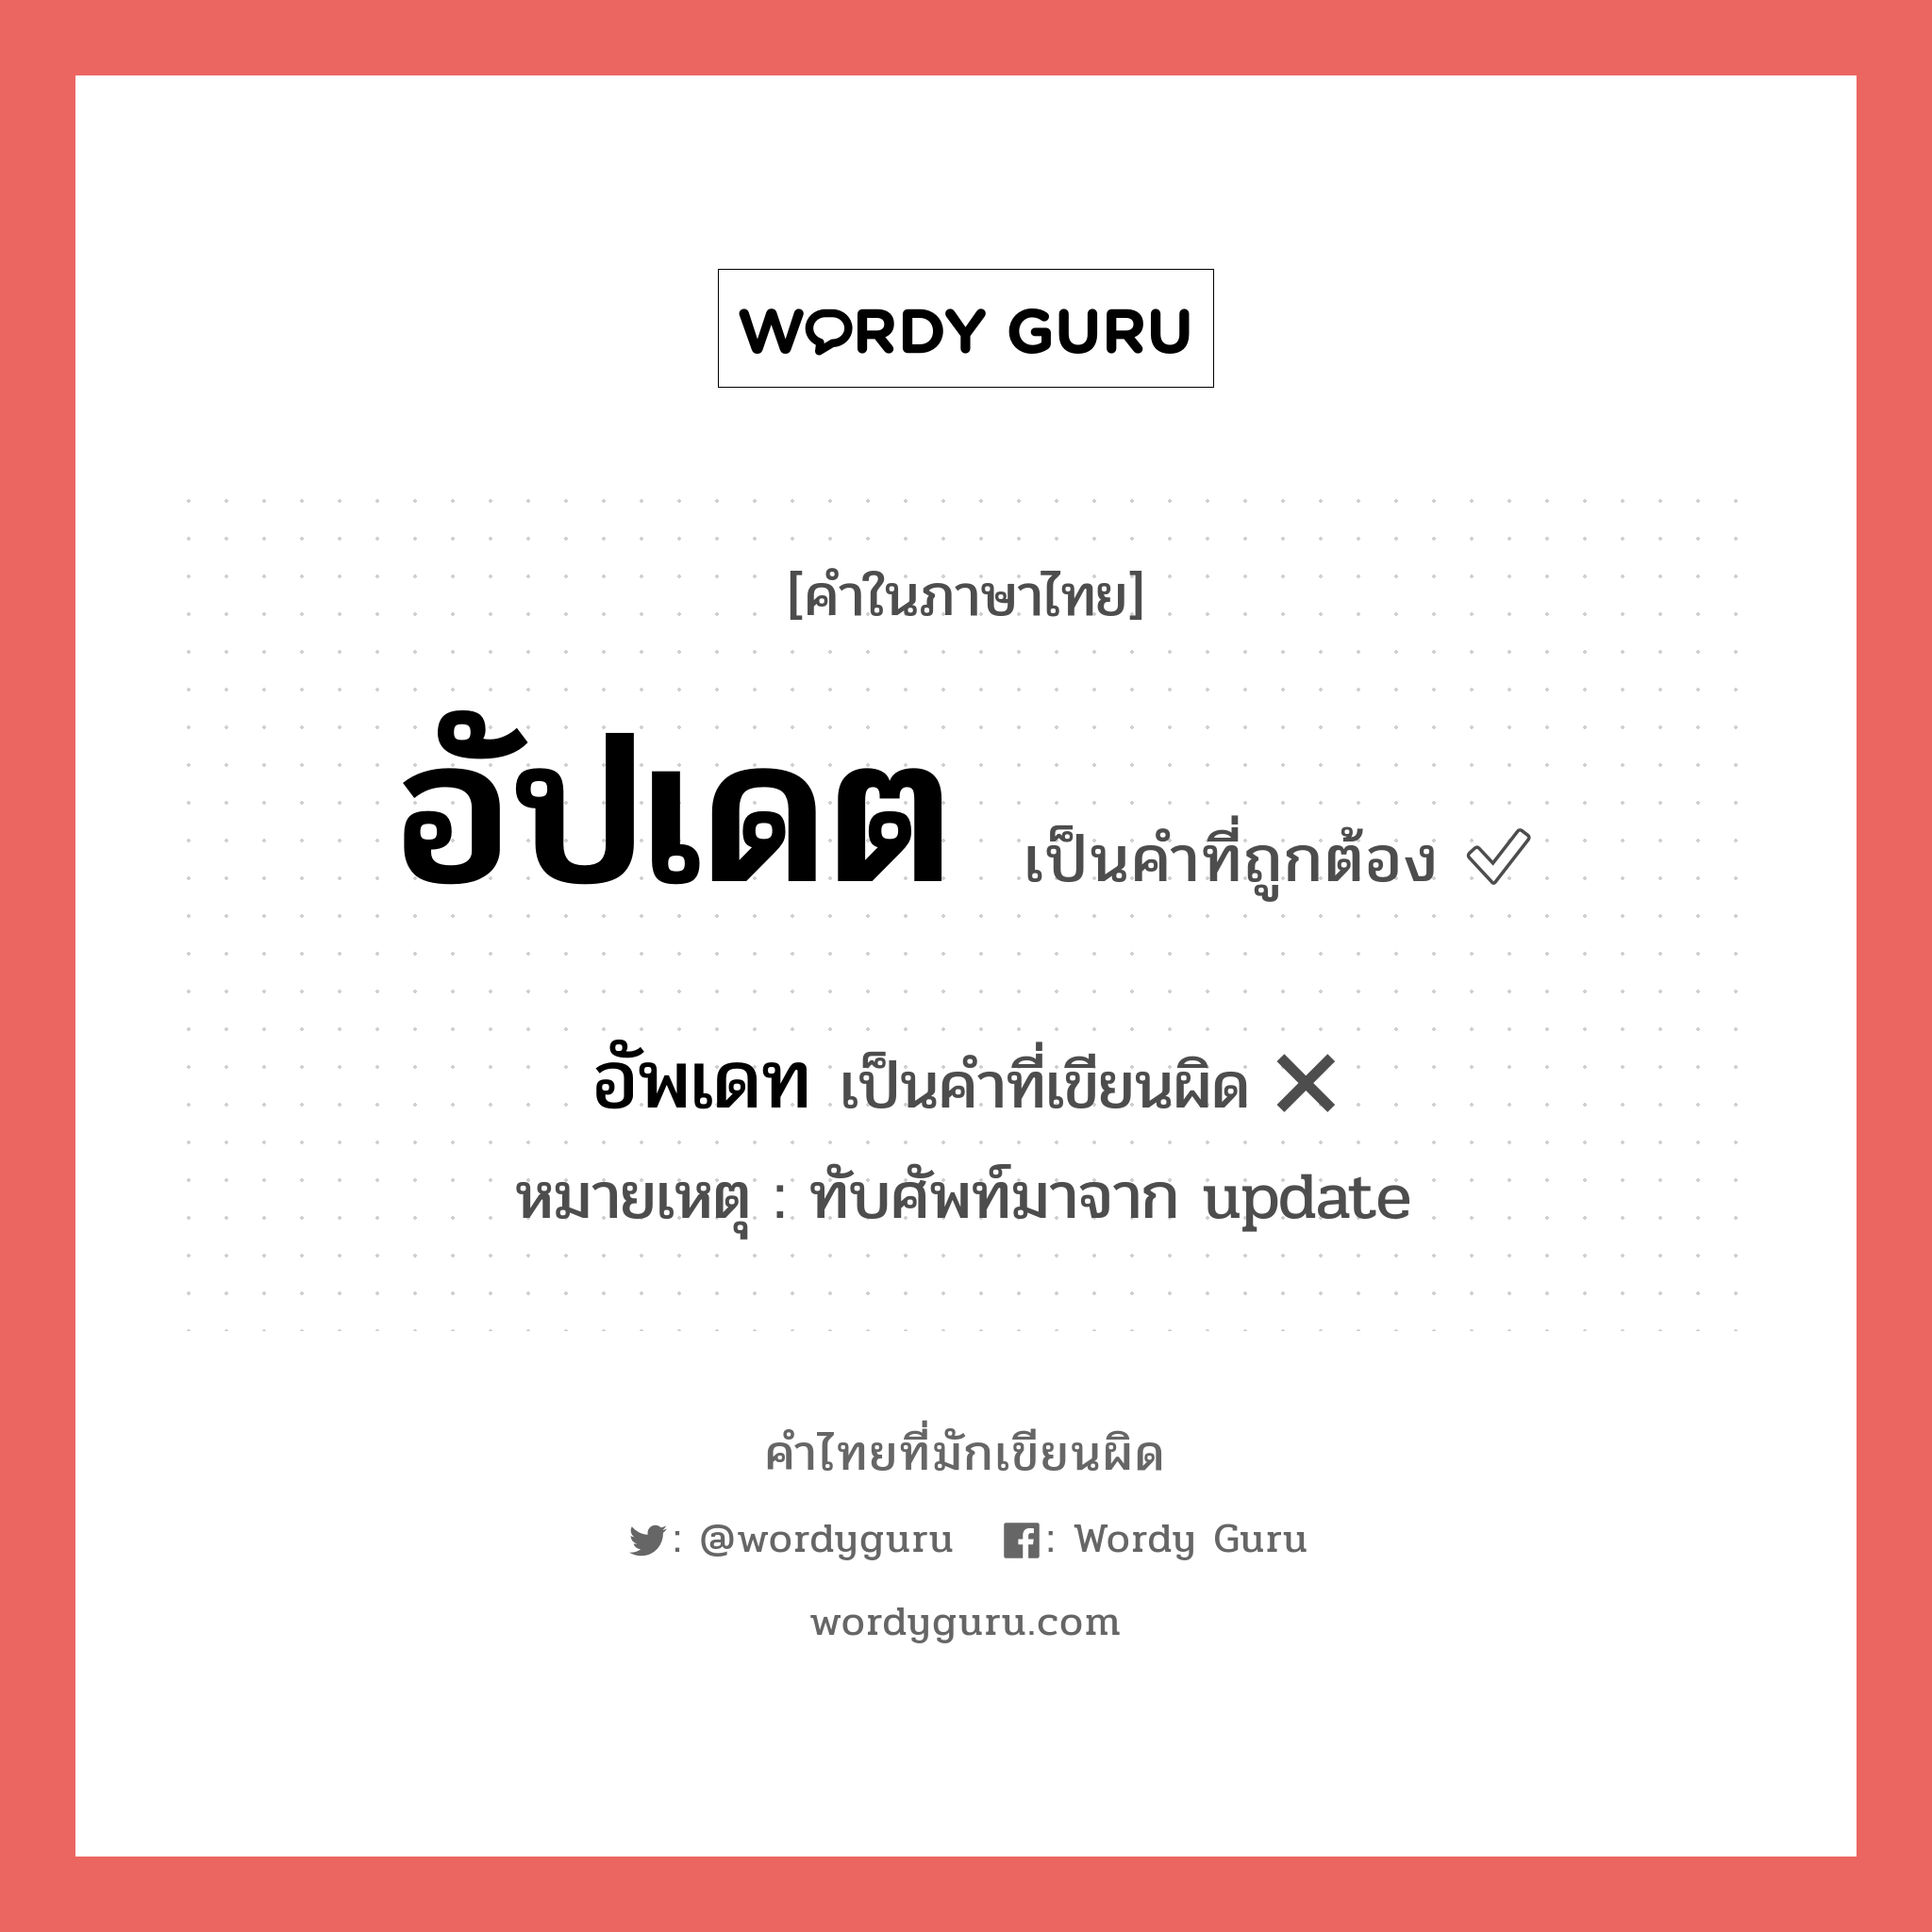 อัปเดต หรือ อัพเดท คำไหนเขียนถูก?, คำในภาษาไทยที่มักเขียนผิด อัปเดต คำที่ผิด ❌ อัพเดท หมายเหตุ ทับศัพท์มาจาก update